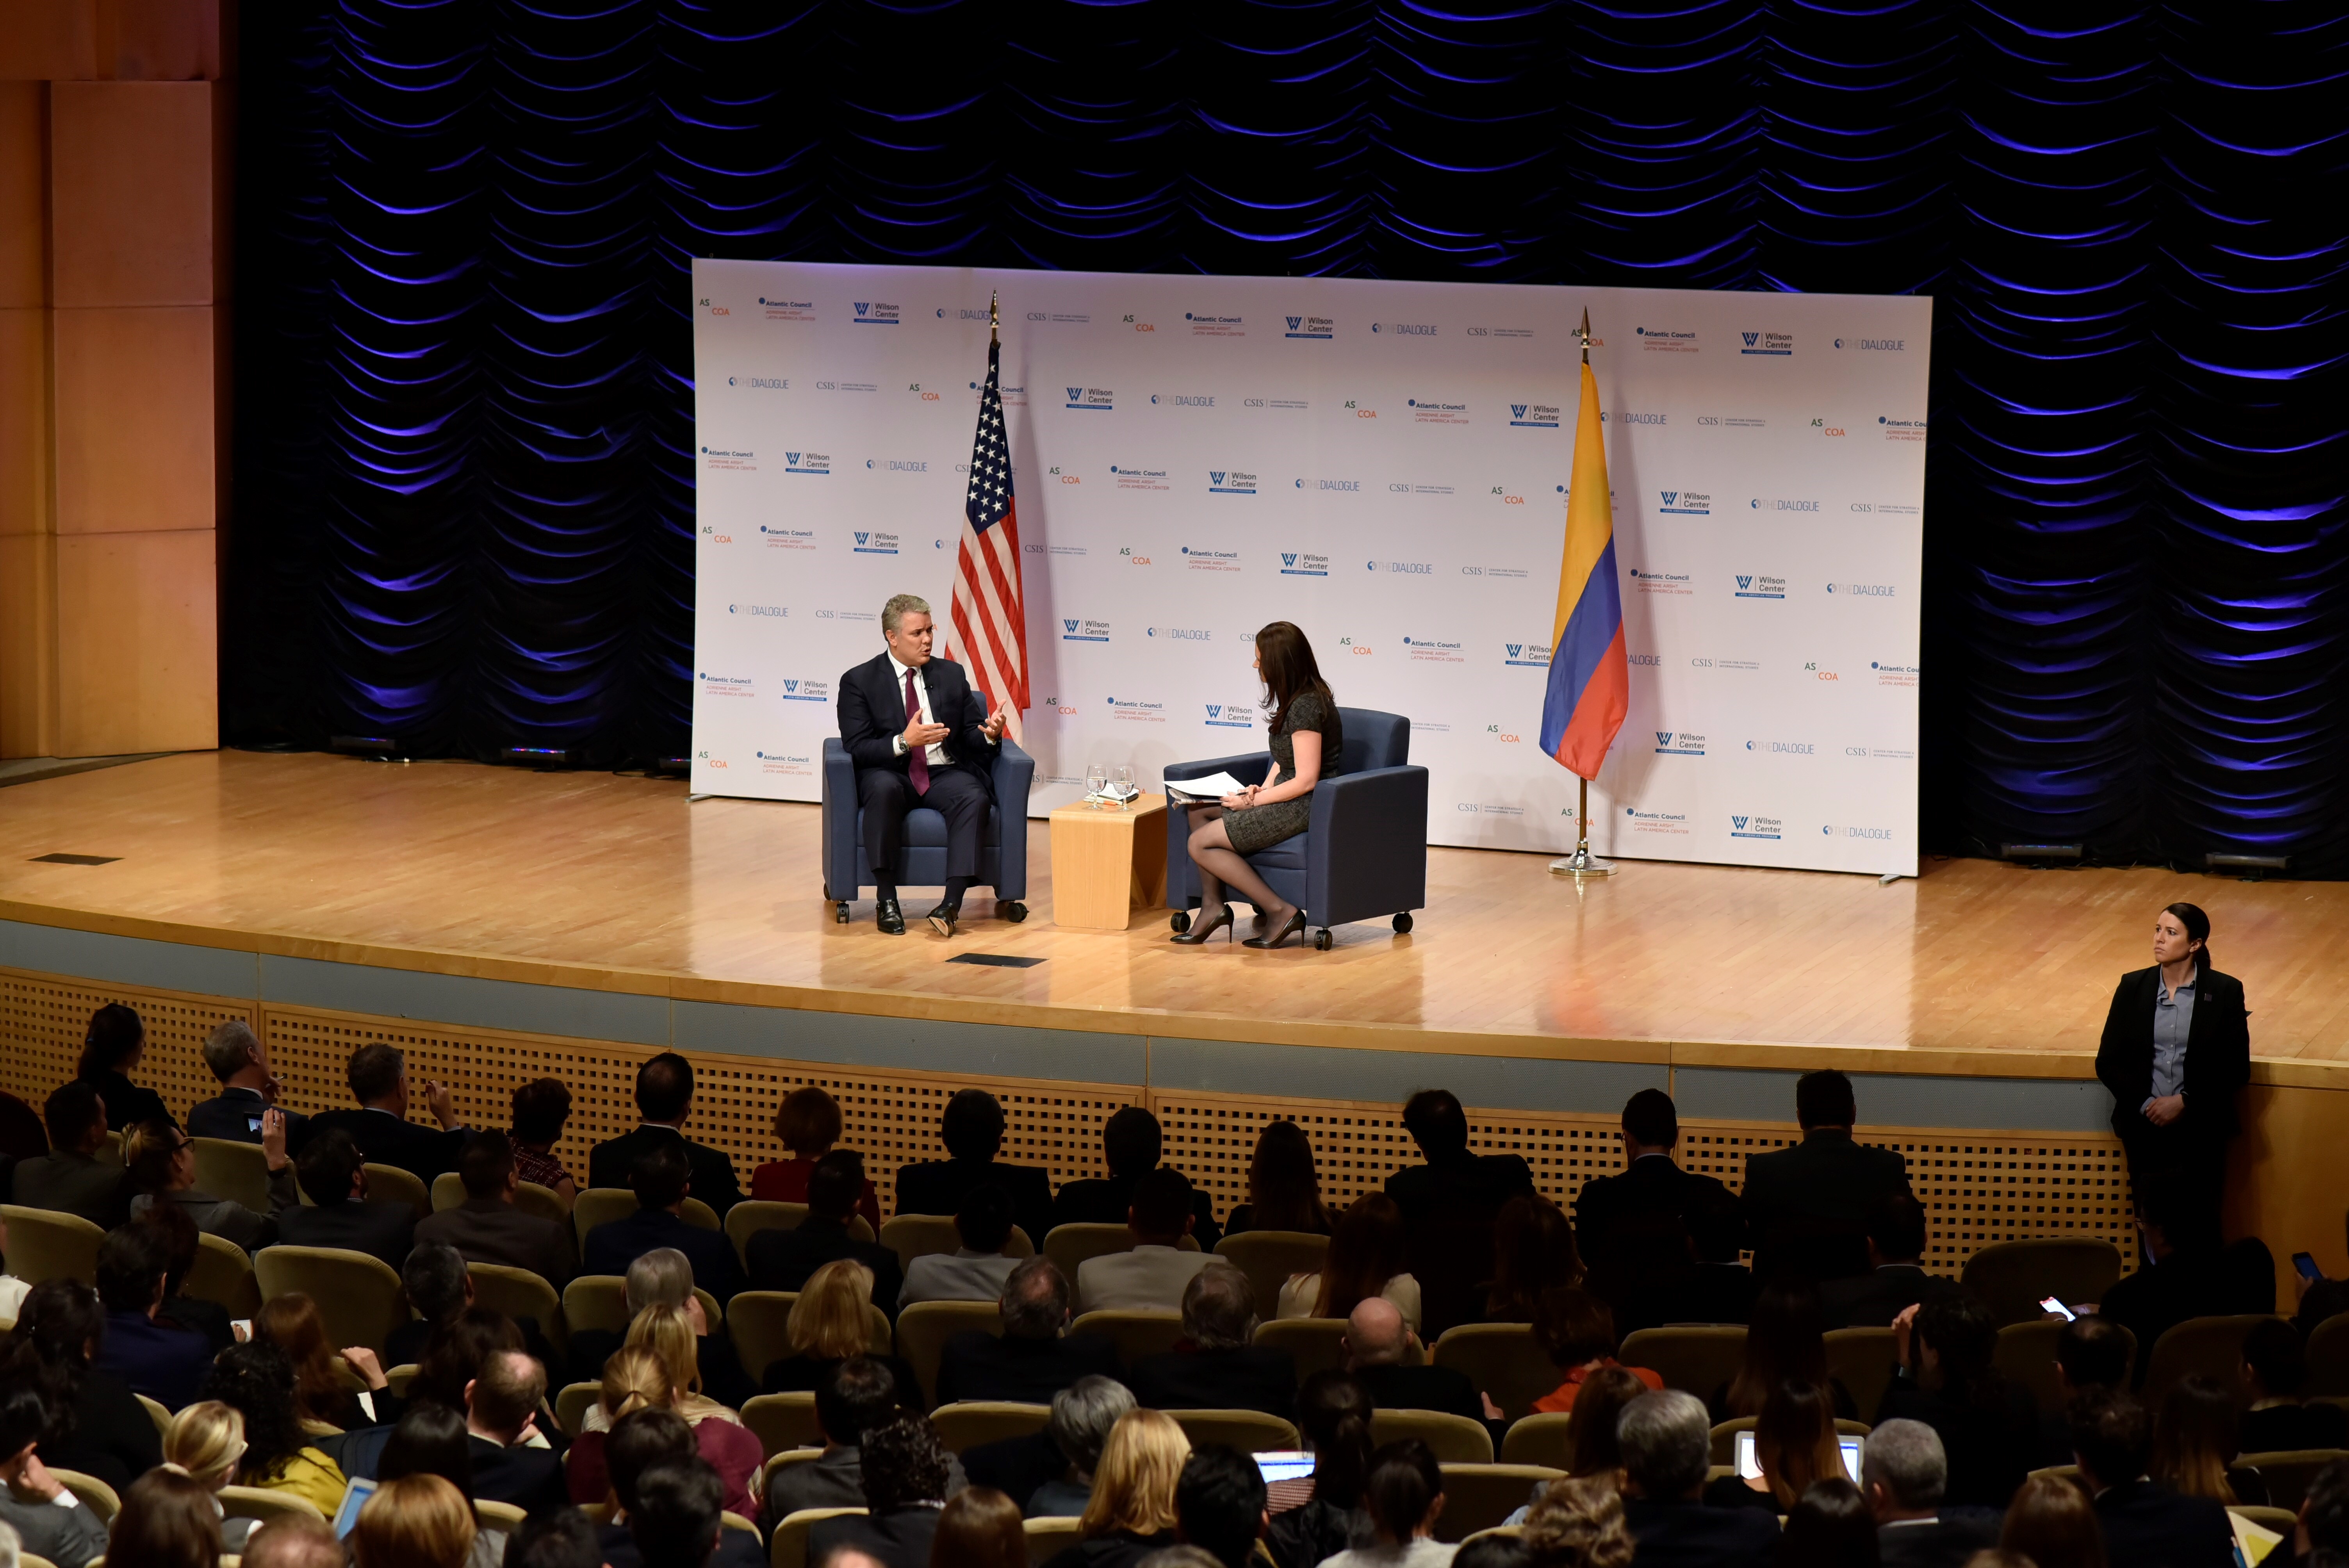 El Presidente Iván Duque, en compañía del Canciller Carlos Holmes Trujillo, asistió a un conversatorio con centros de pensamiento de los Estados Unidos